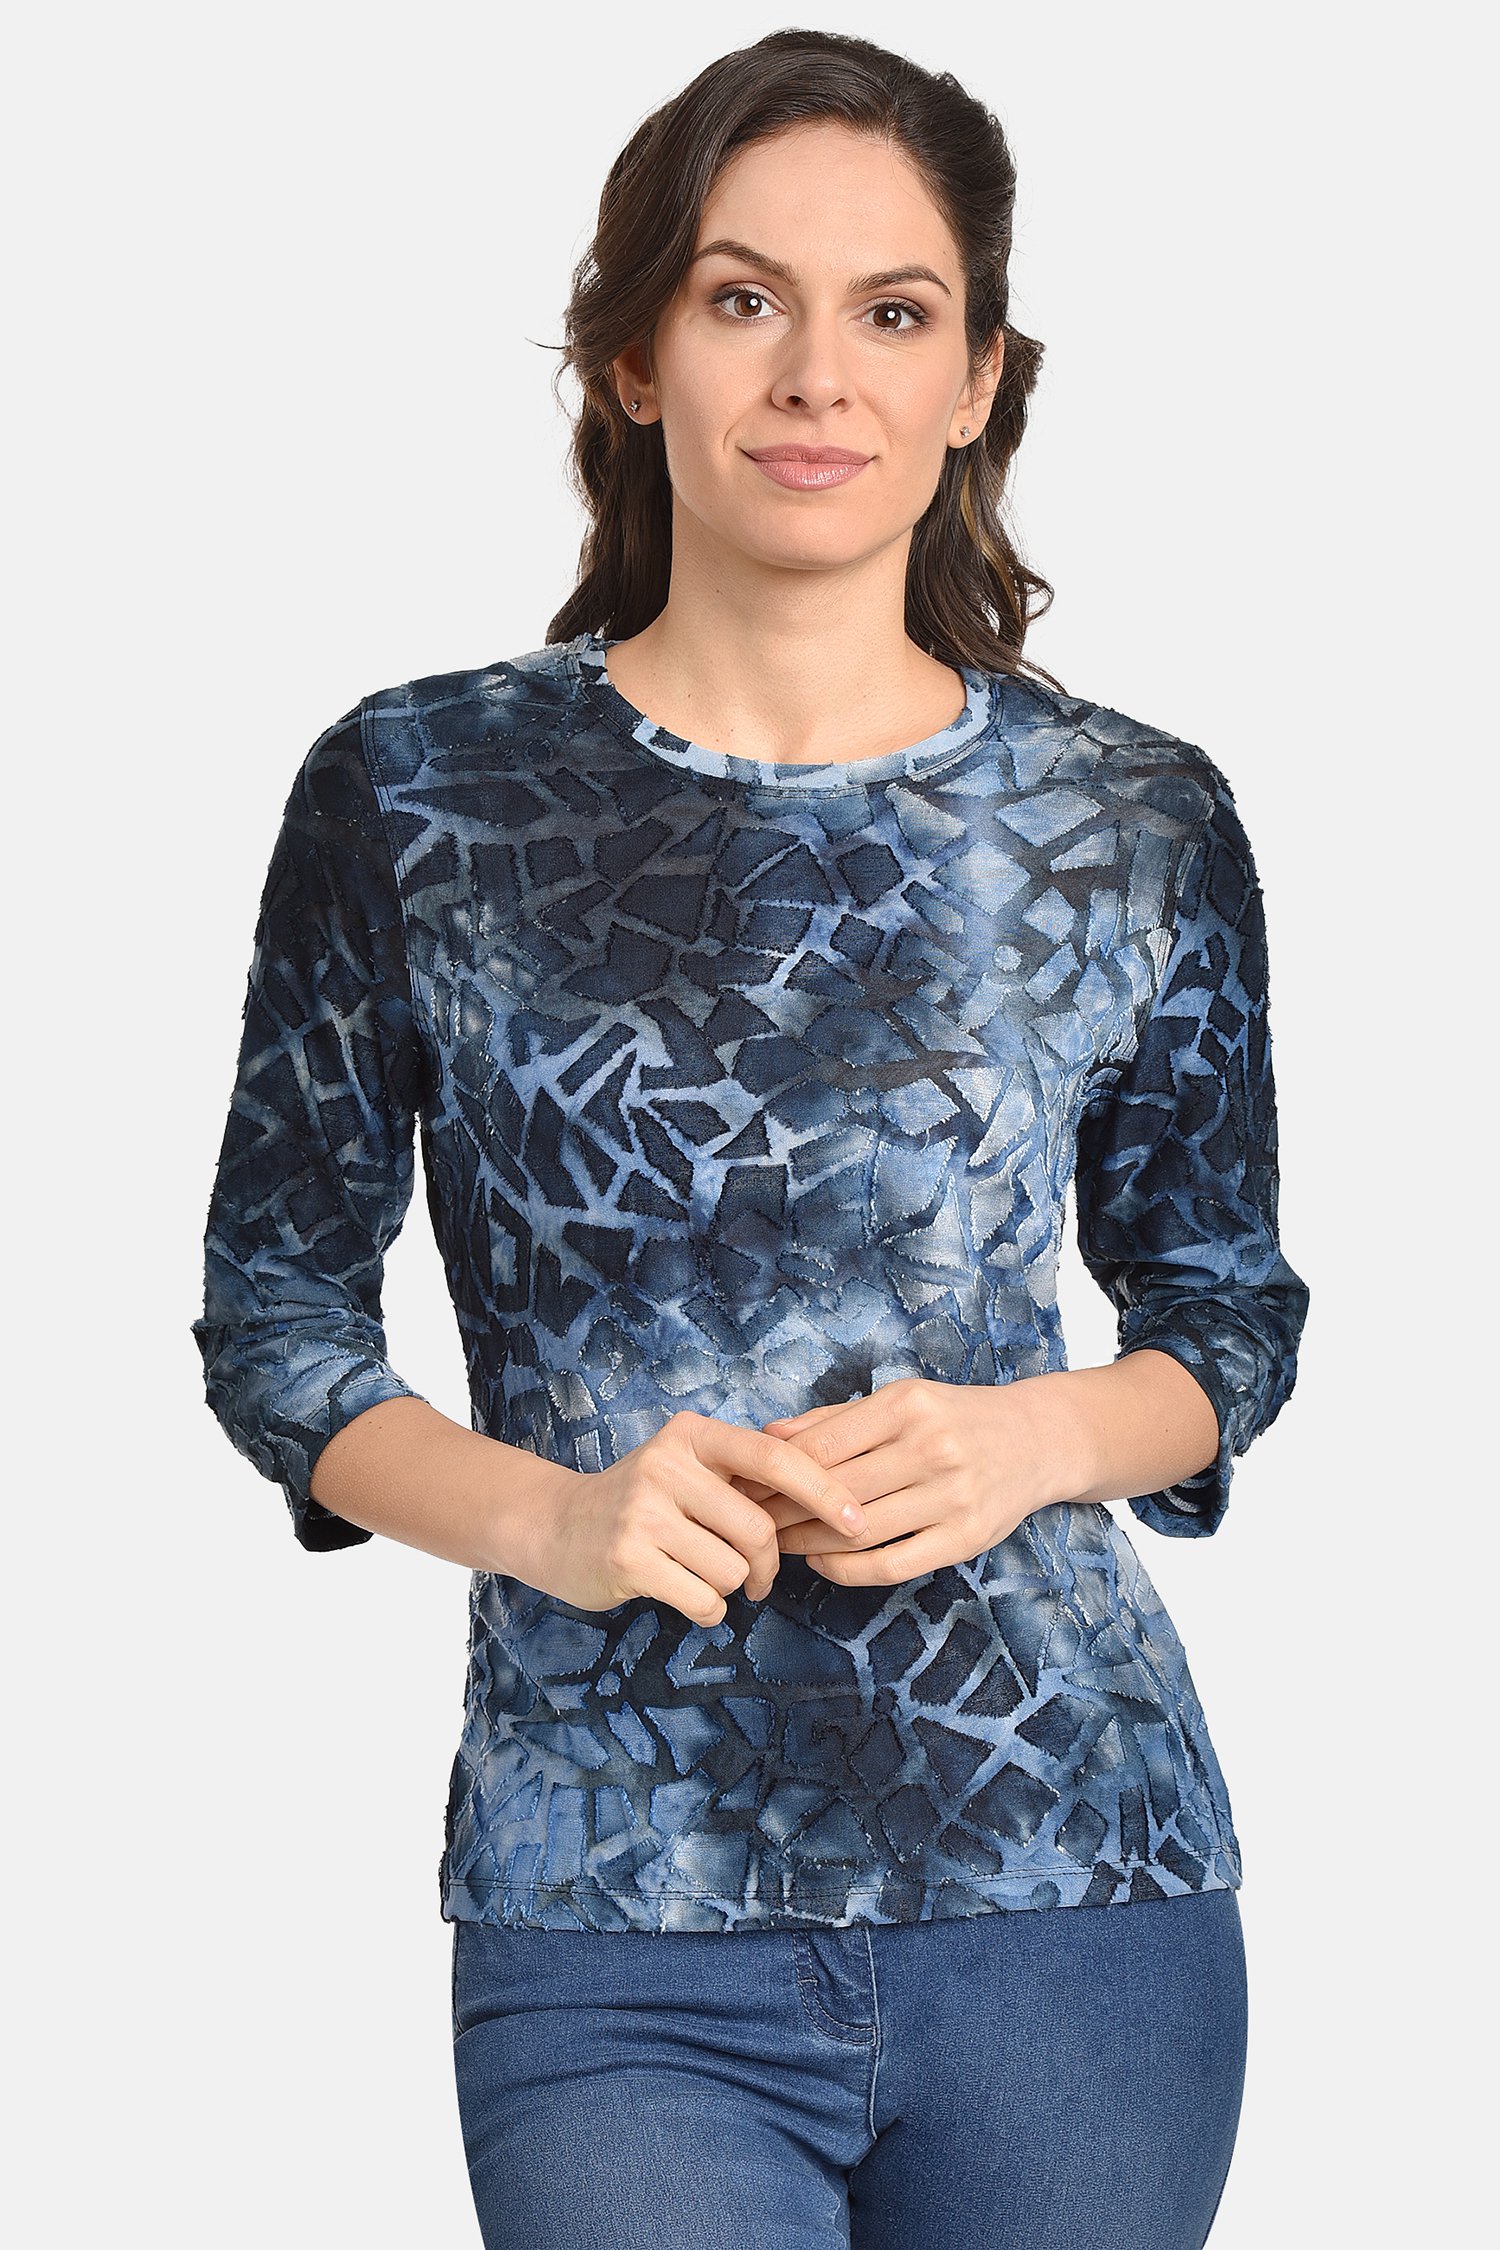 T-shirt bleu fin avec imprimé géométrique de Bicalla pour Femmes